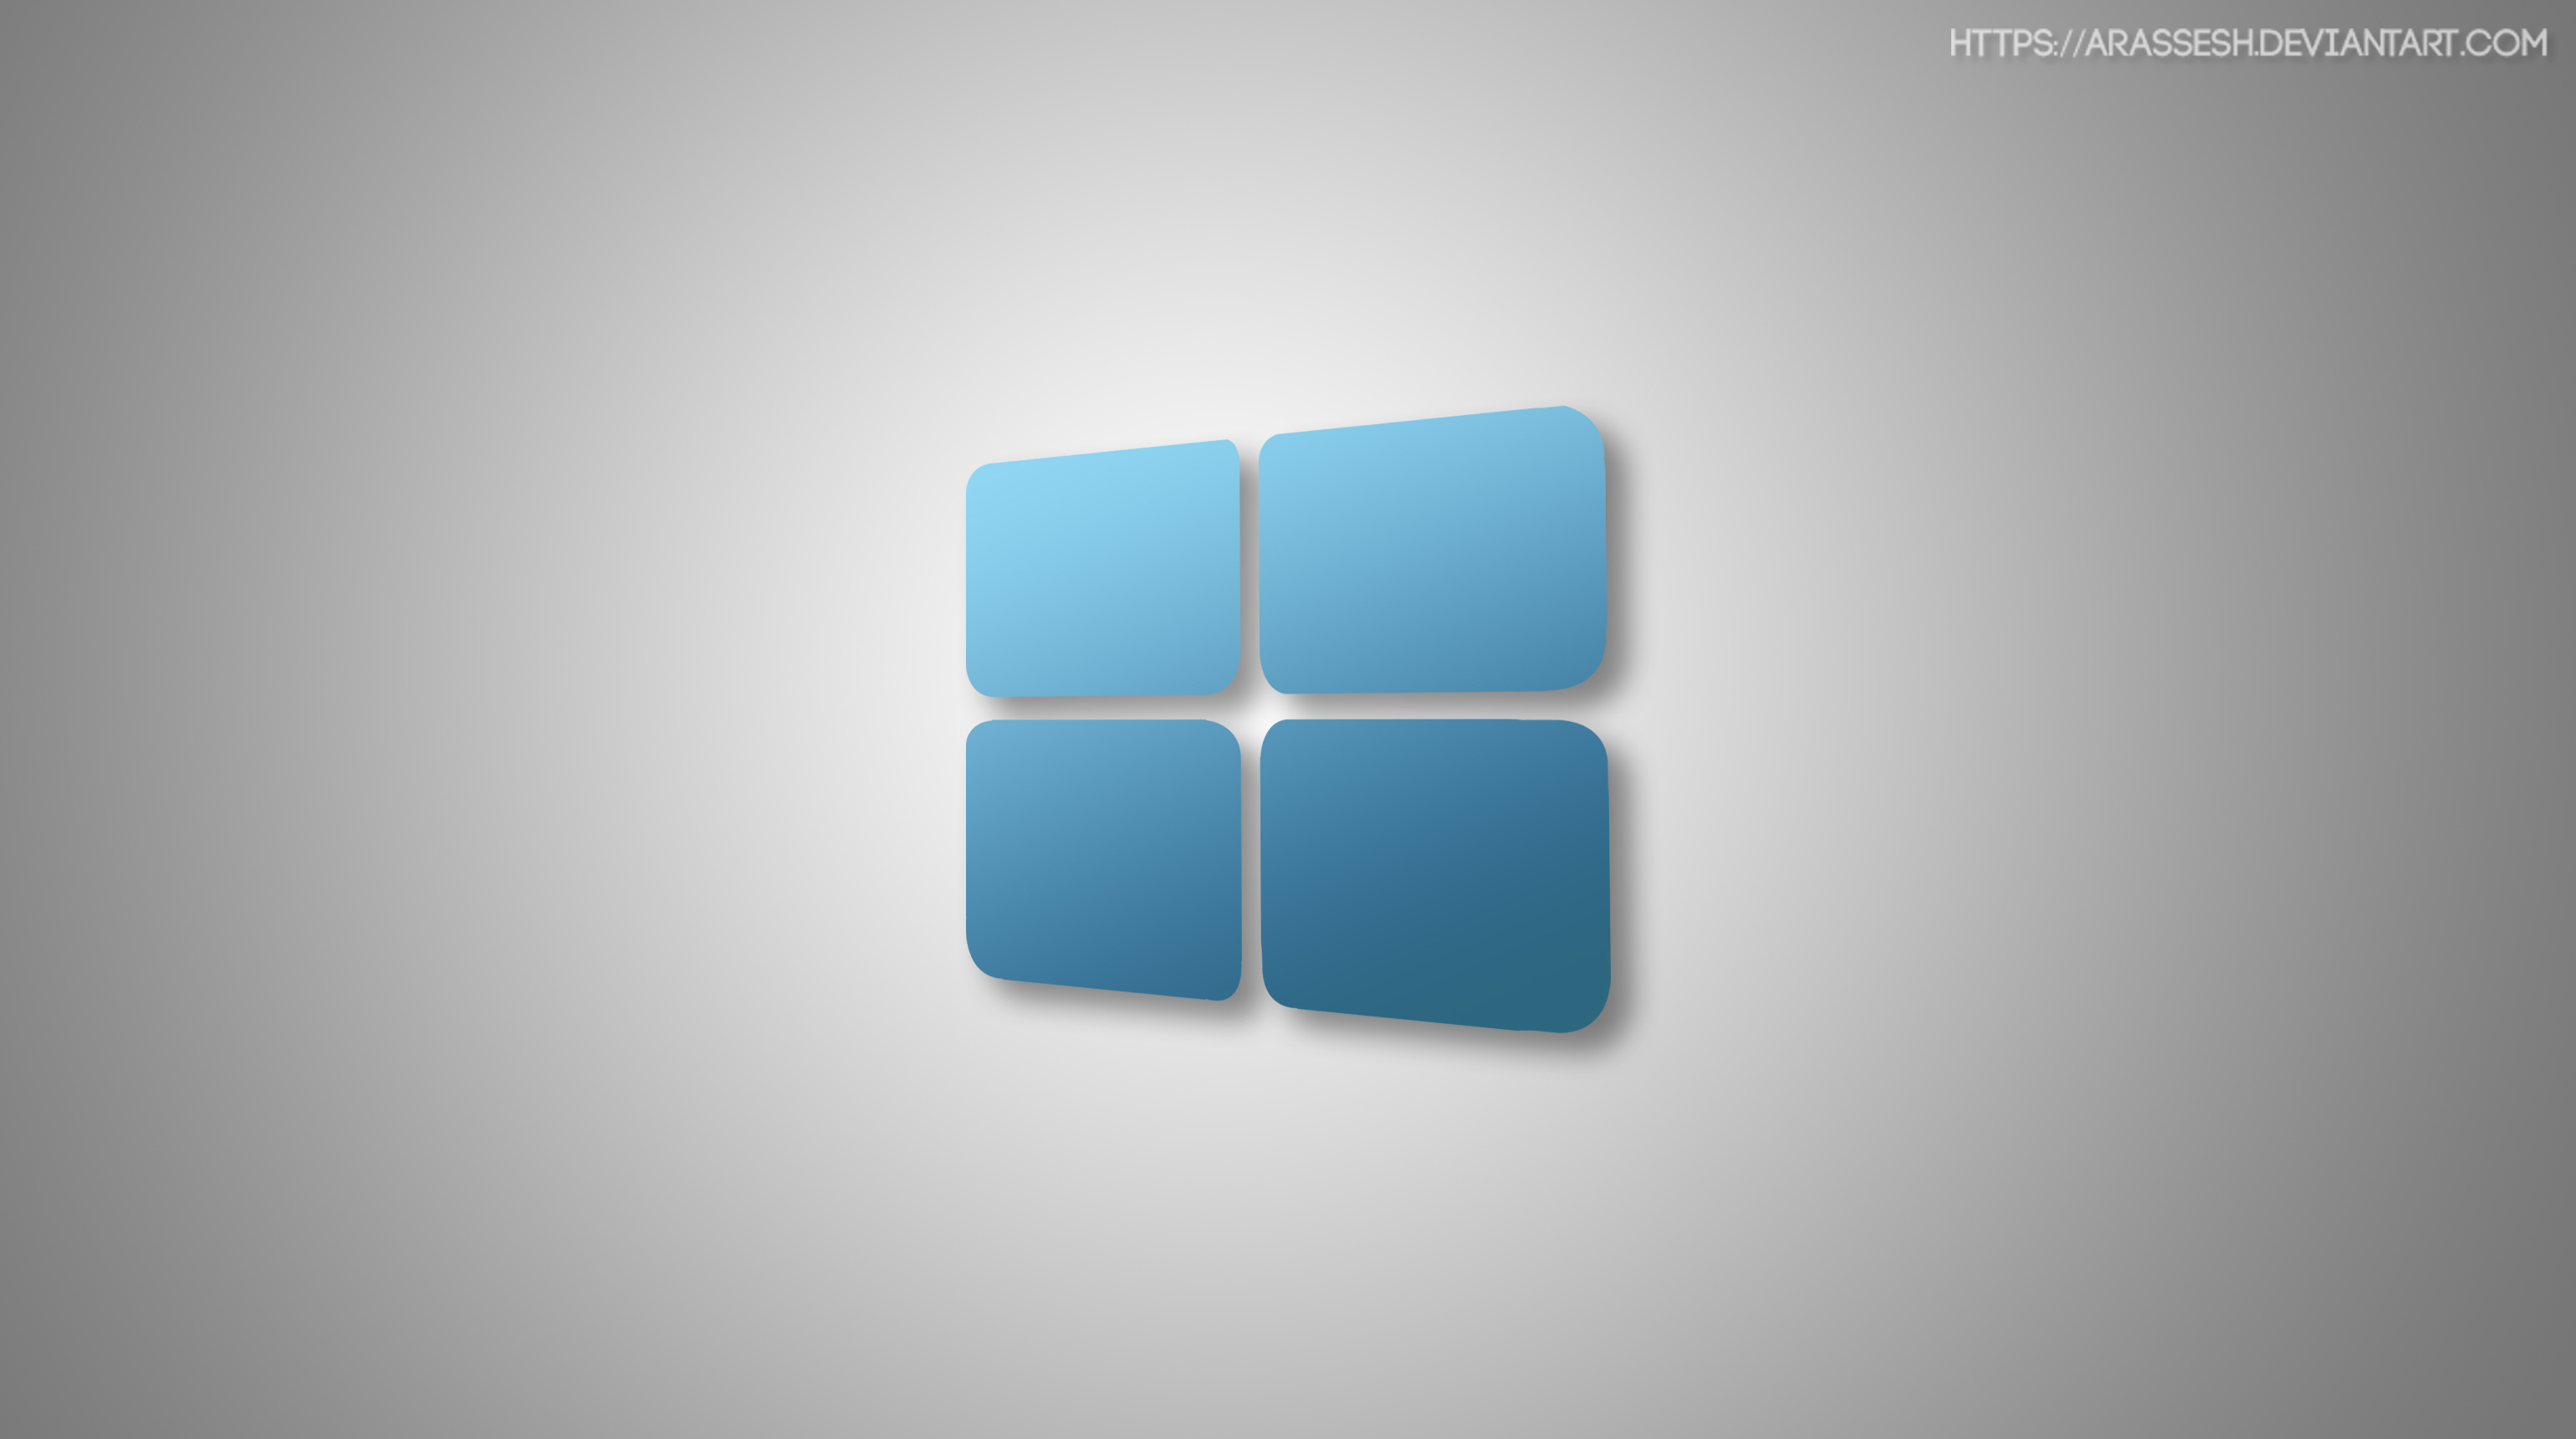 White Windows 10 Wallpaper Hd - HD Wallpaper 